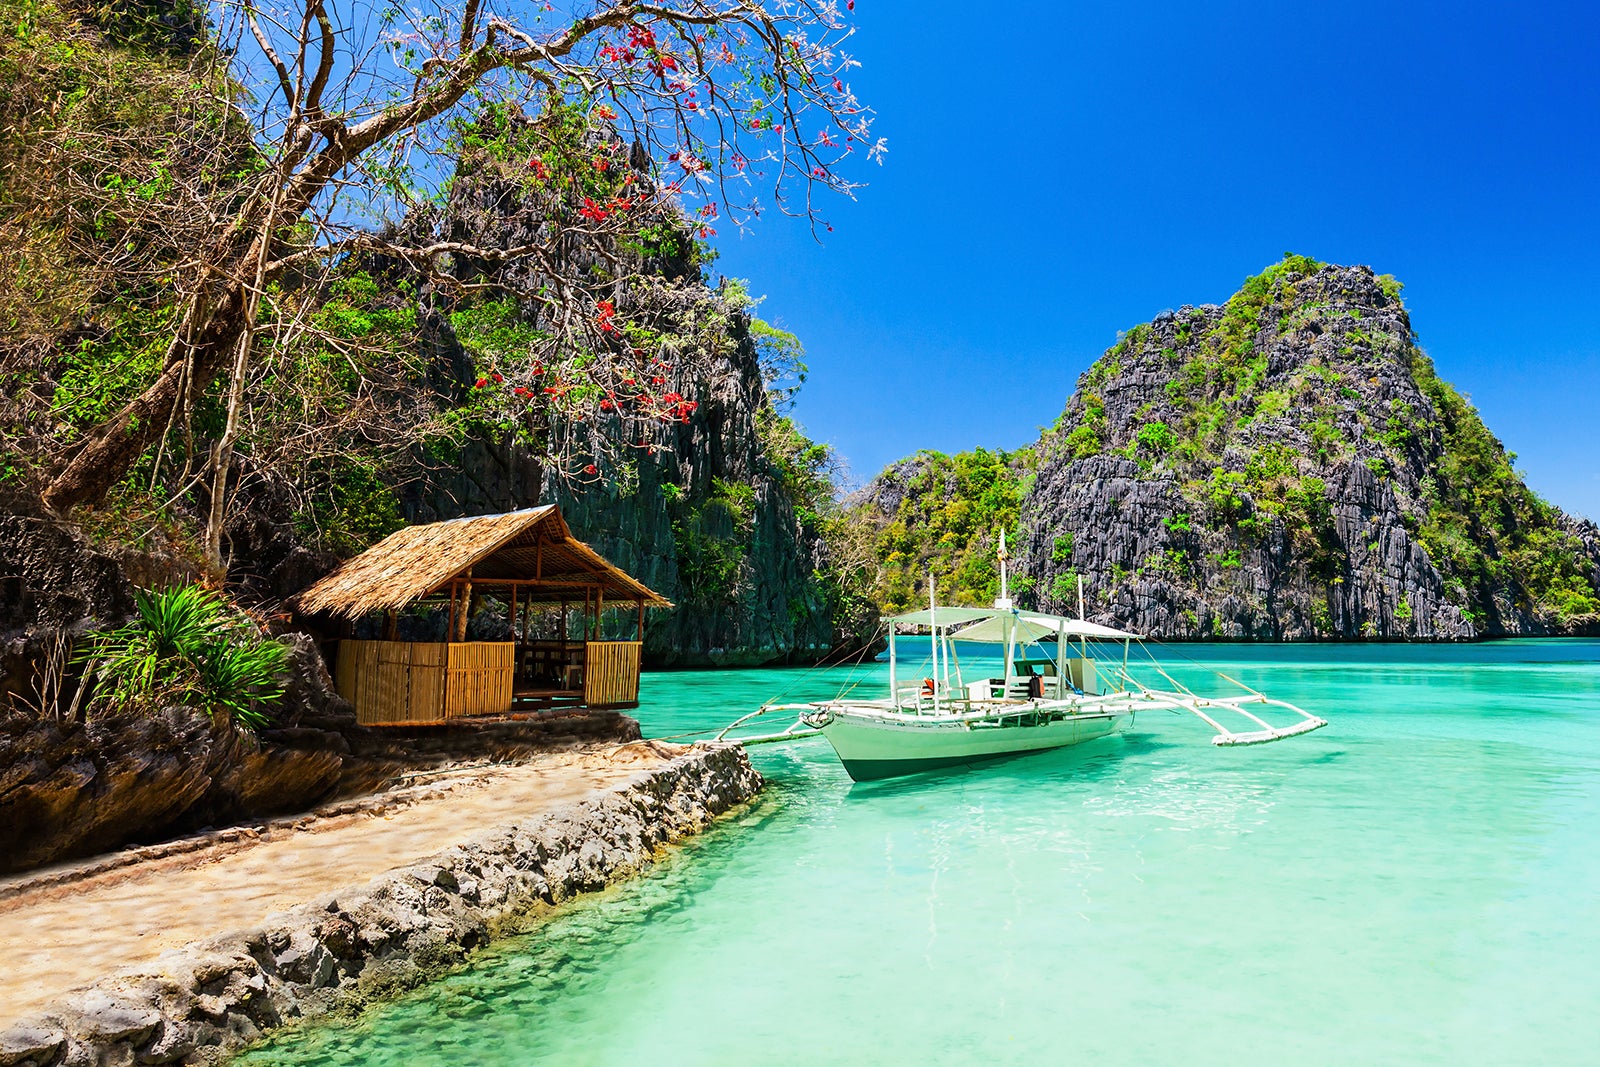 El Nido - nơi được mệnh danh là hòn đảo rồng của Philippines